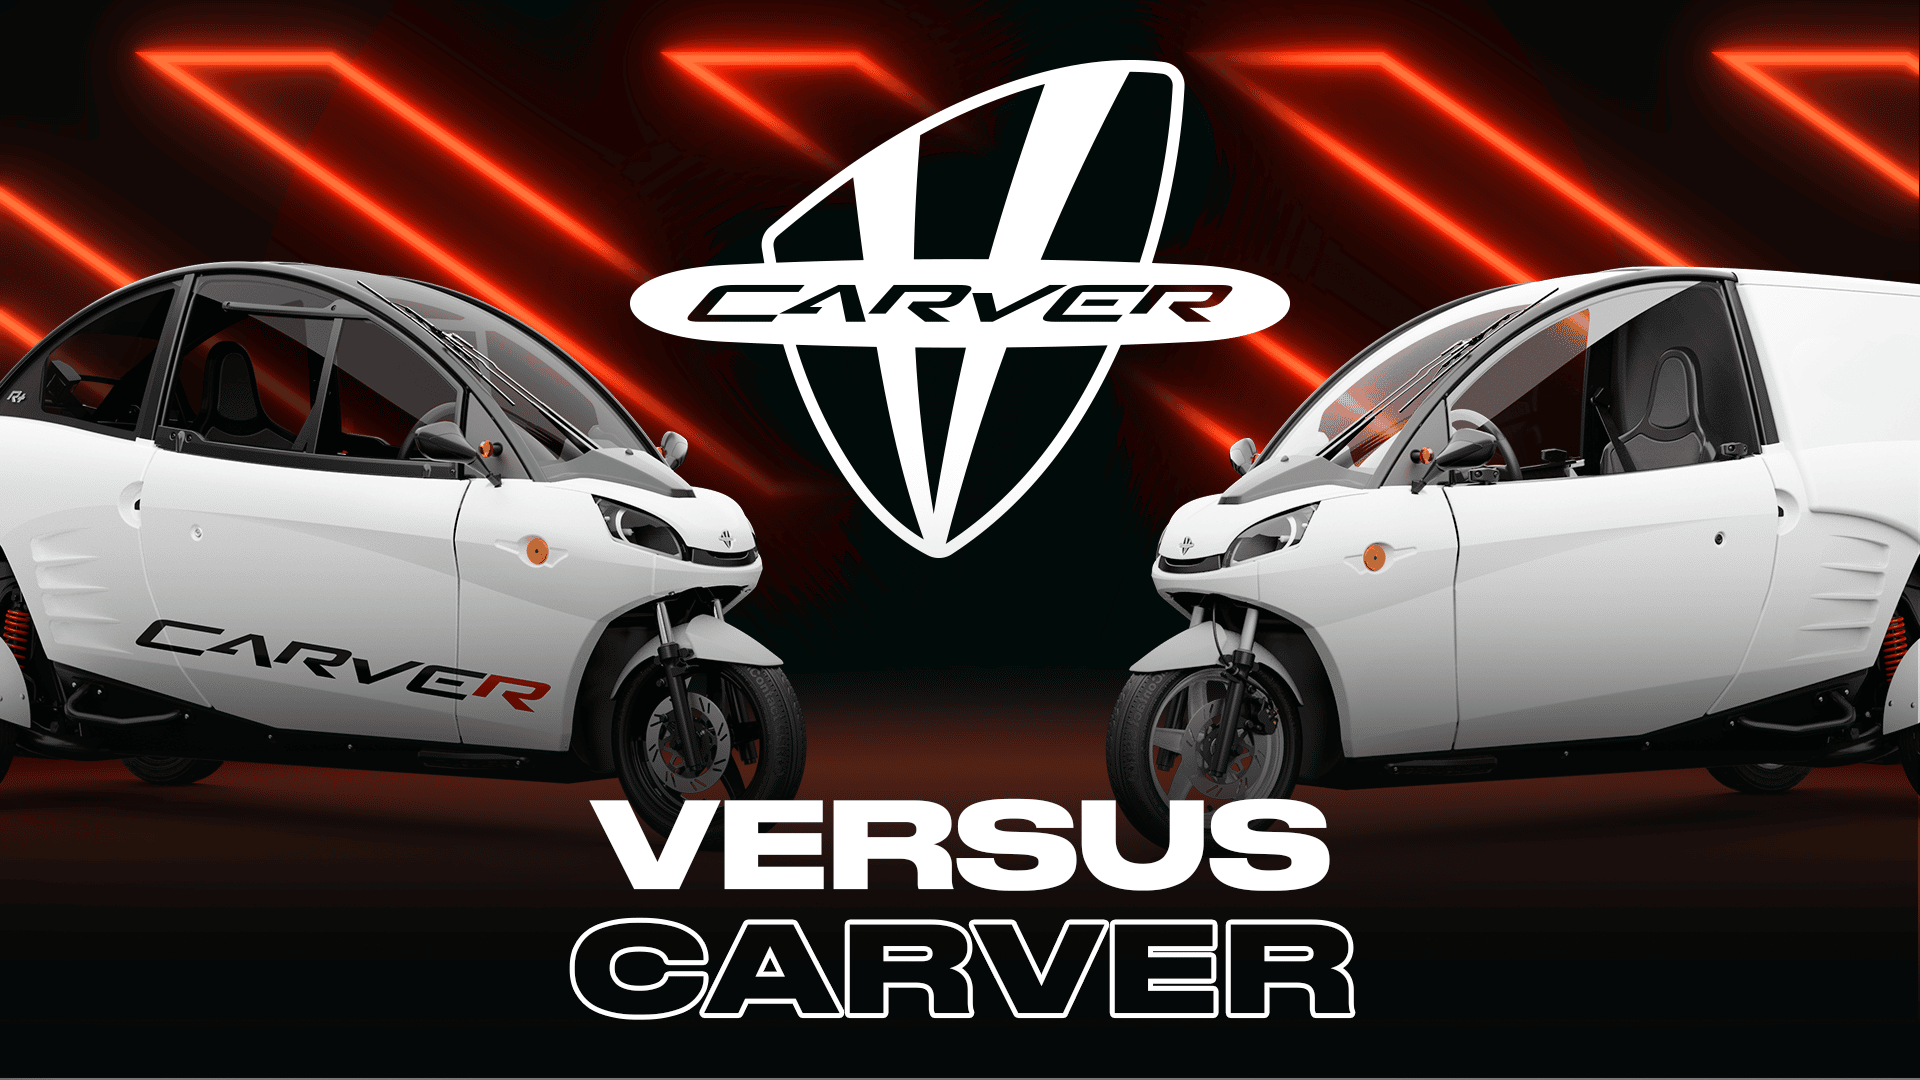 Carver vs the rest: Carver